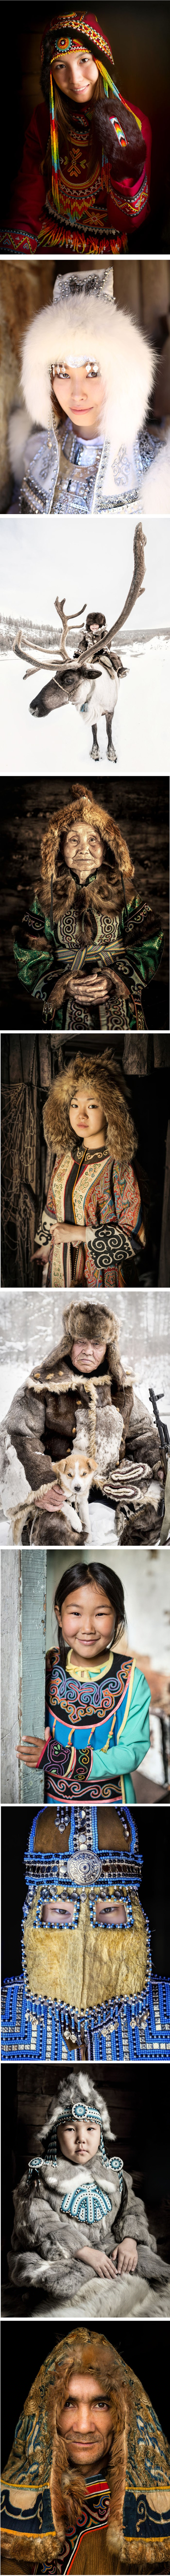 Proveo je 6 mjeseci u Sibiru kako bi fotografirao domorodce, a ovo su rezultati